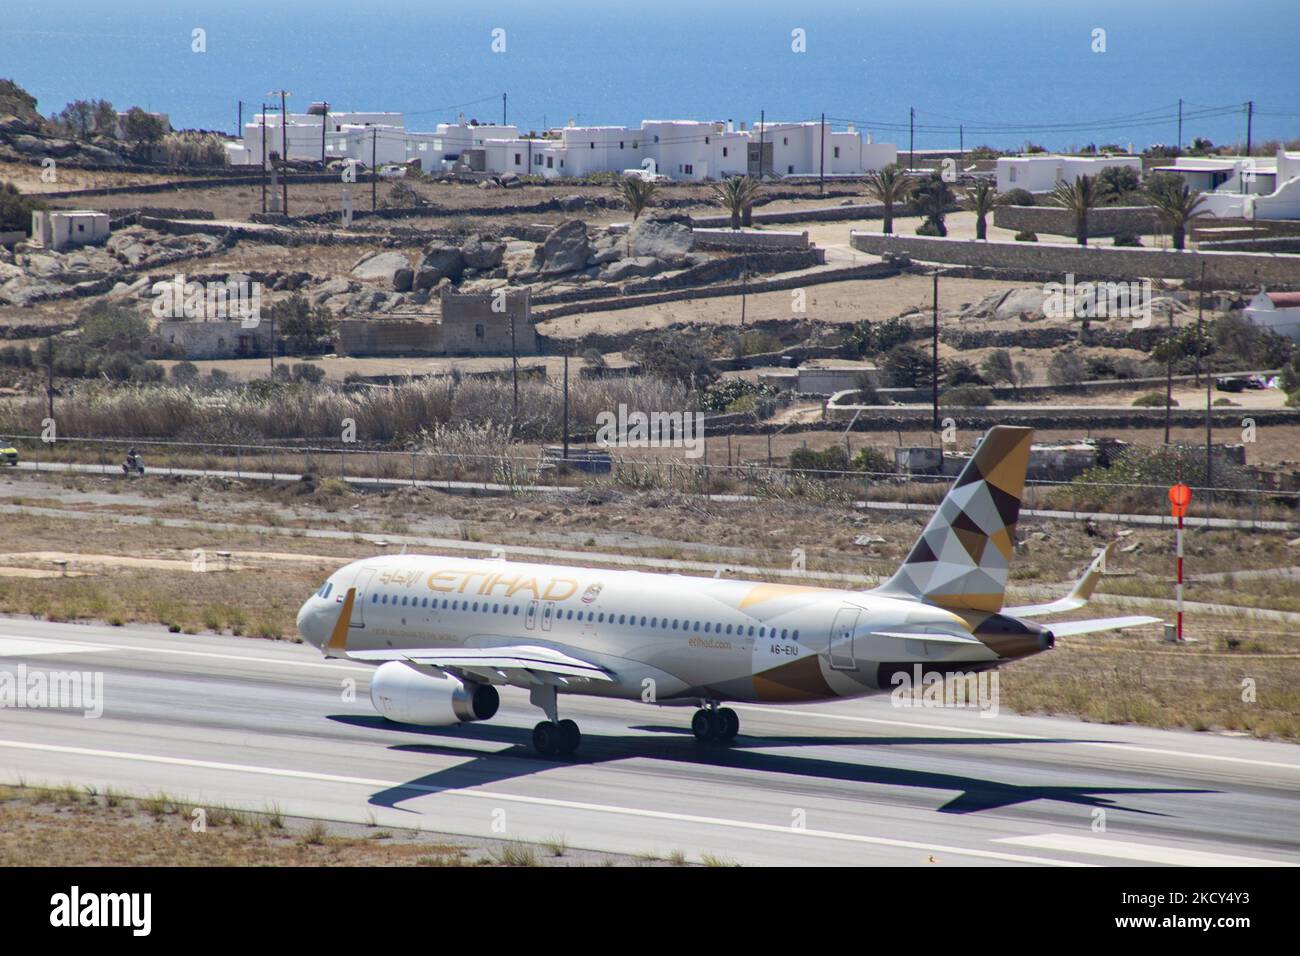 Etihad Airways Airbus A320 comme vu au sol, au départ et au départ de l'aéroport de Mykonos JMK. L'avion avec enregistrement A6-EIU emmène le passager après le décollage à l'aéroport d'Abu Dhabi. Etihad est le deuxième porte-drapeau des Émirats arabes Unis. L'île grecque de Myconos est une destination de voyage méditerranéenne très prisée pour des vacances dans les Cyclades, la mer Égée avec les bâtiments emblématiques blanchis à la chaux, les plages de sable et la célèbre fête aux bars de plage. L'industrie de l'aviation, des voyages, des loisirs, du tourisme et du trafic de passagers est en phase avec la Co Banque D'Images